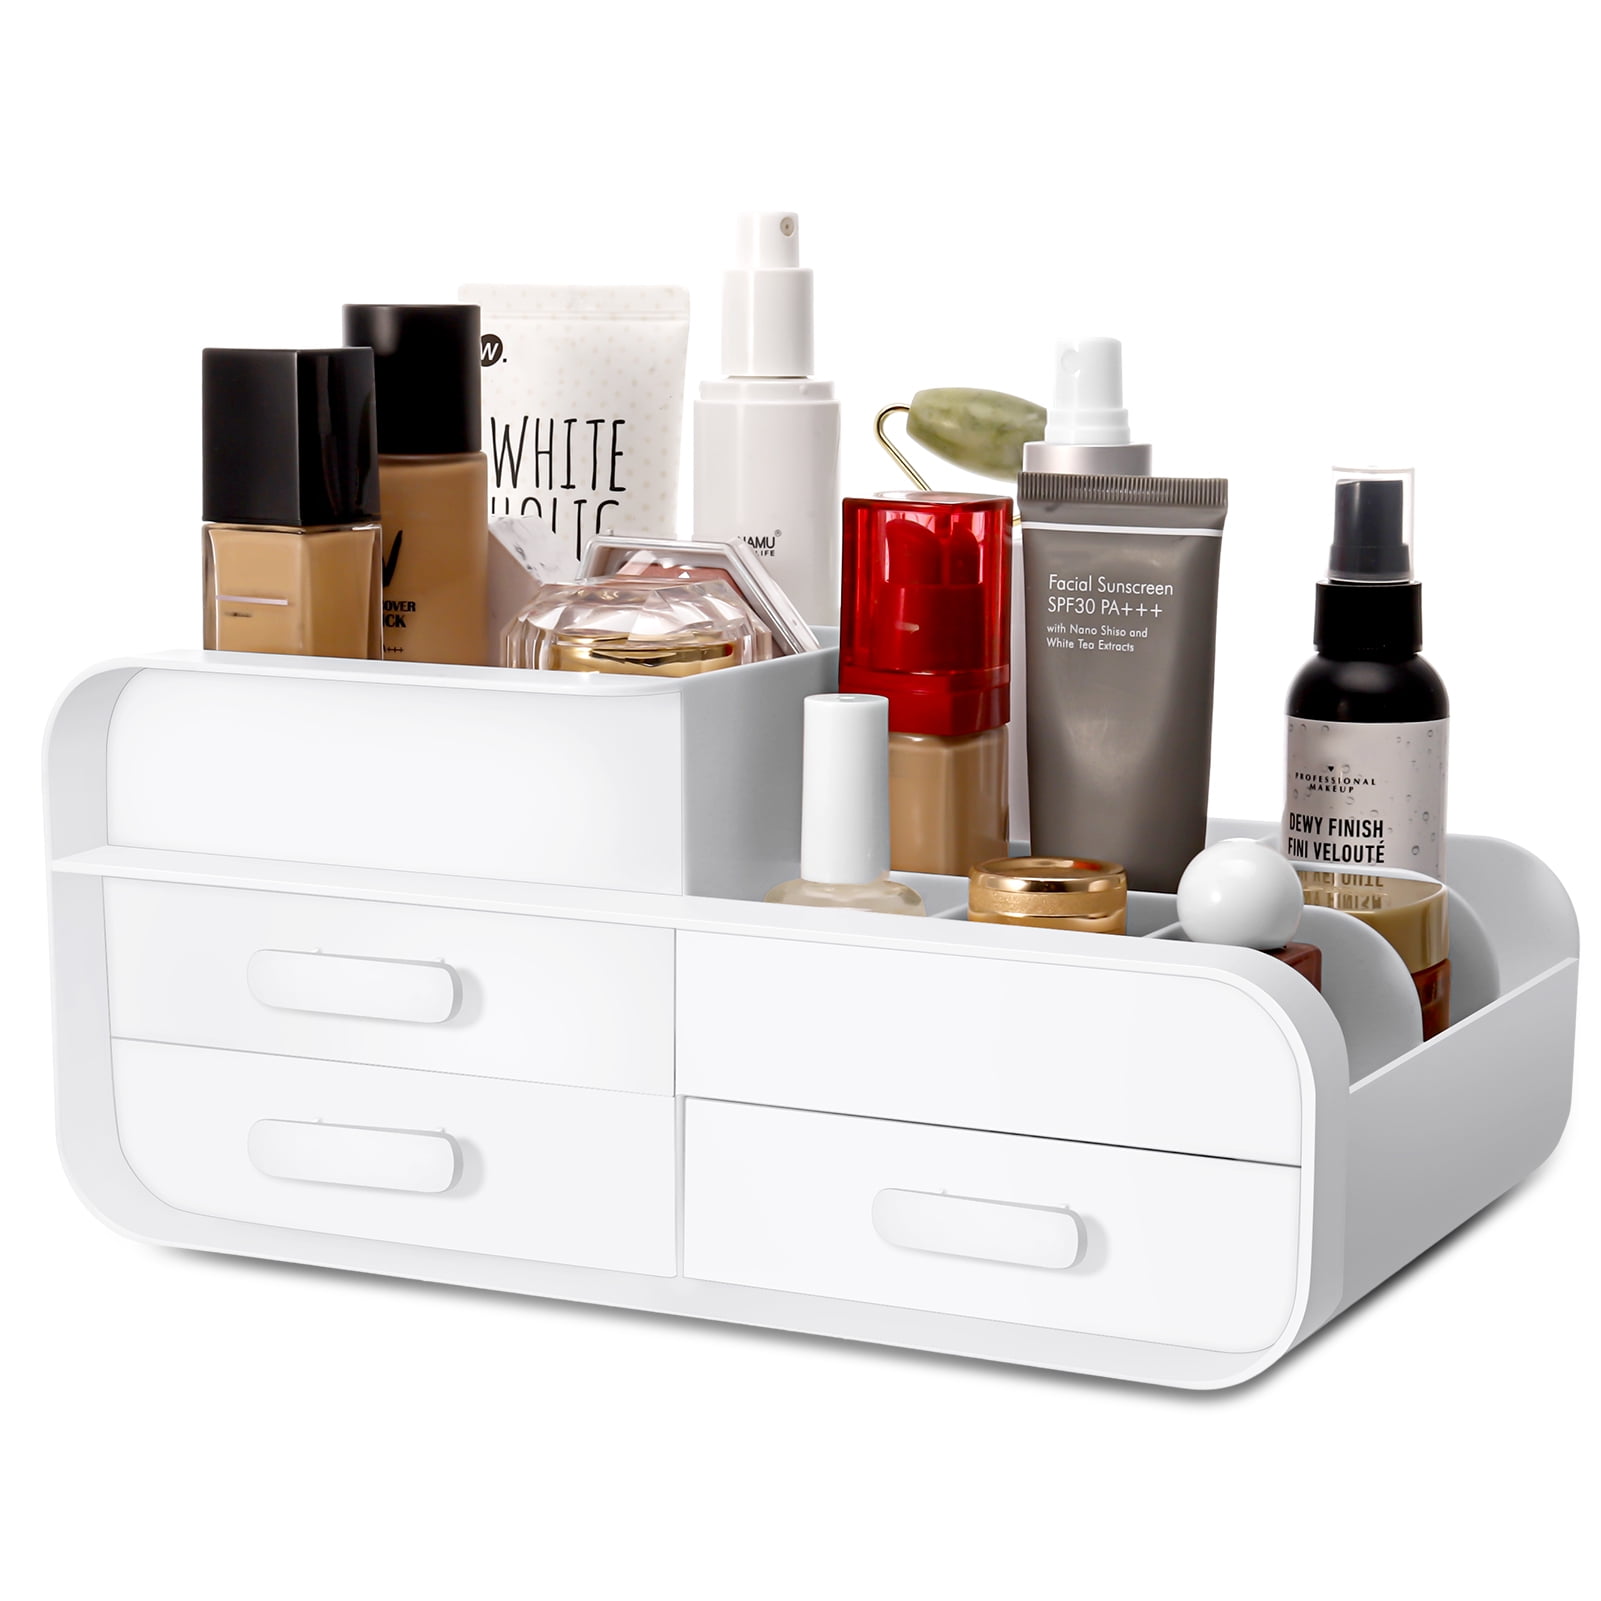 10 Pieces Press on Nail Storage Box Nail Packing Box for Home Use Nail  Salon Pink 